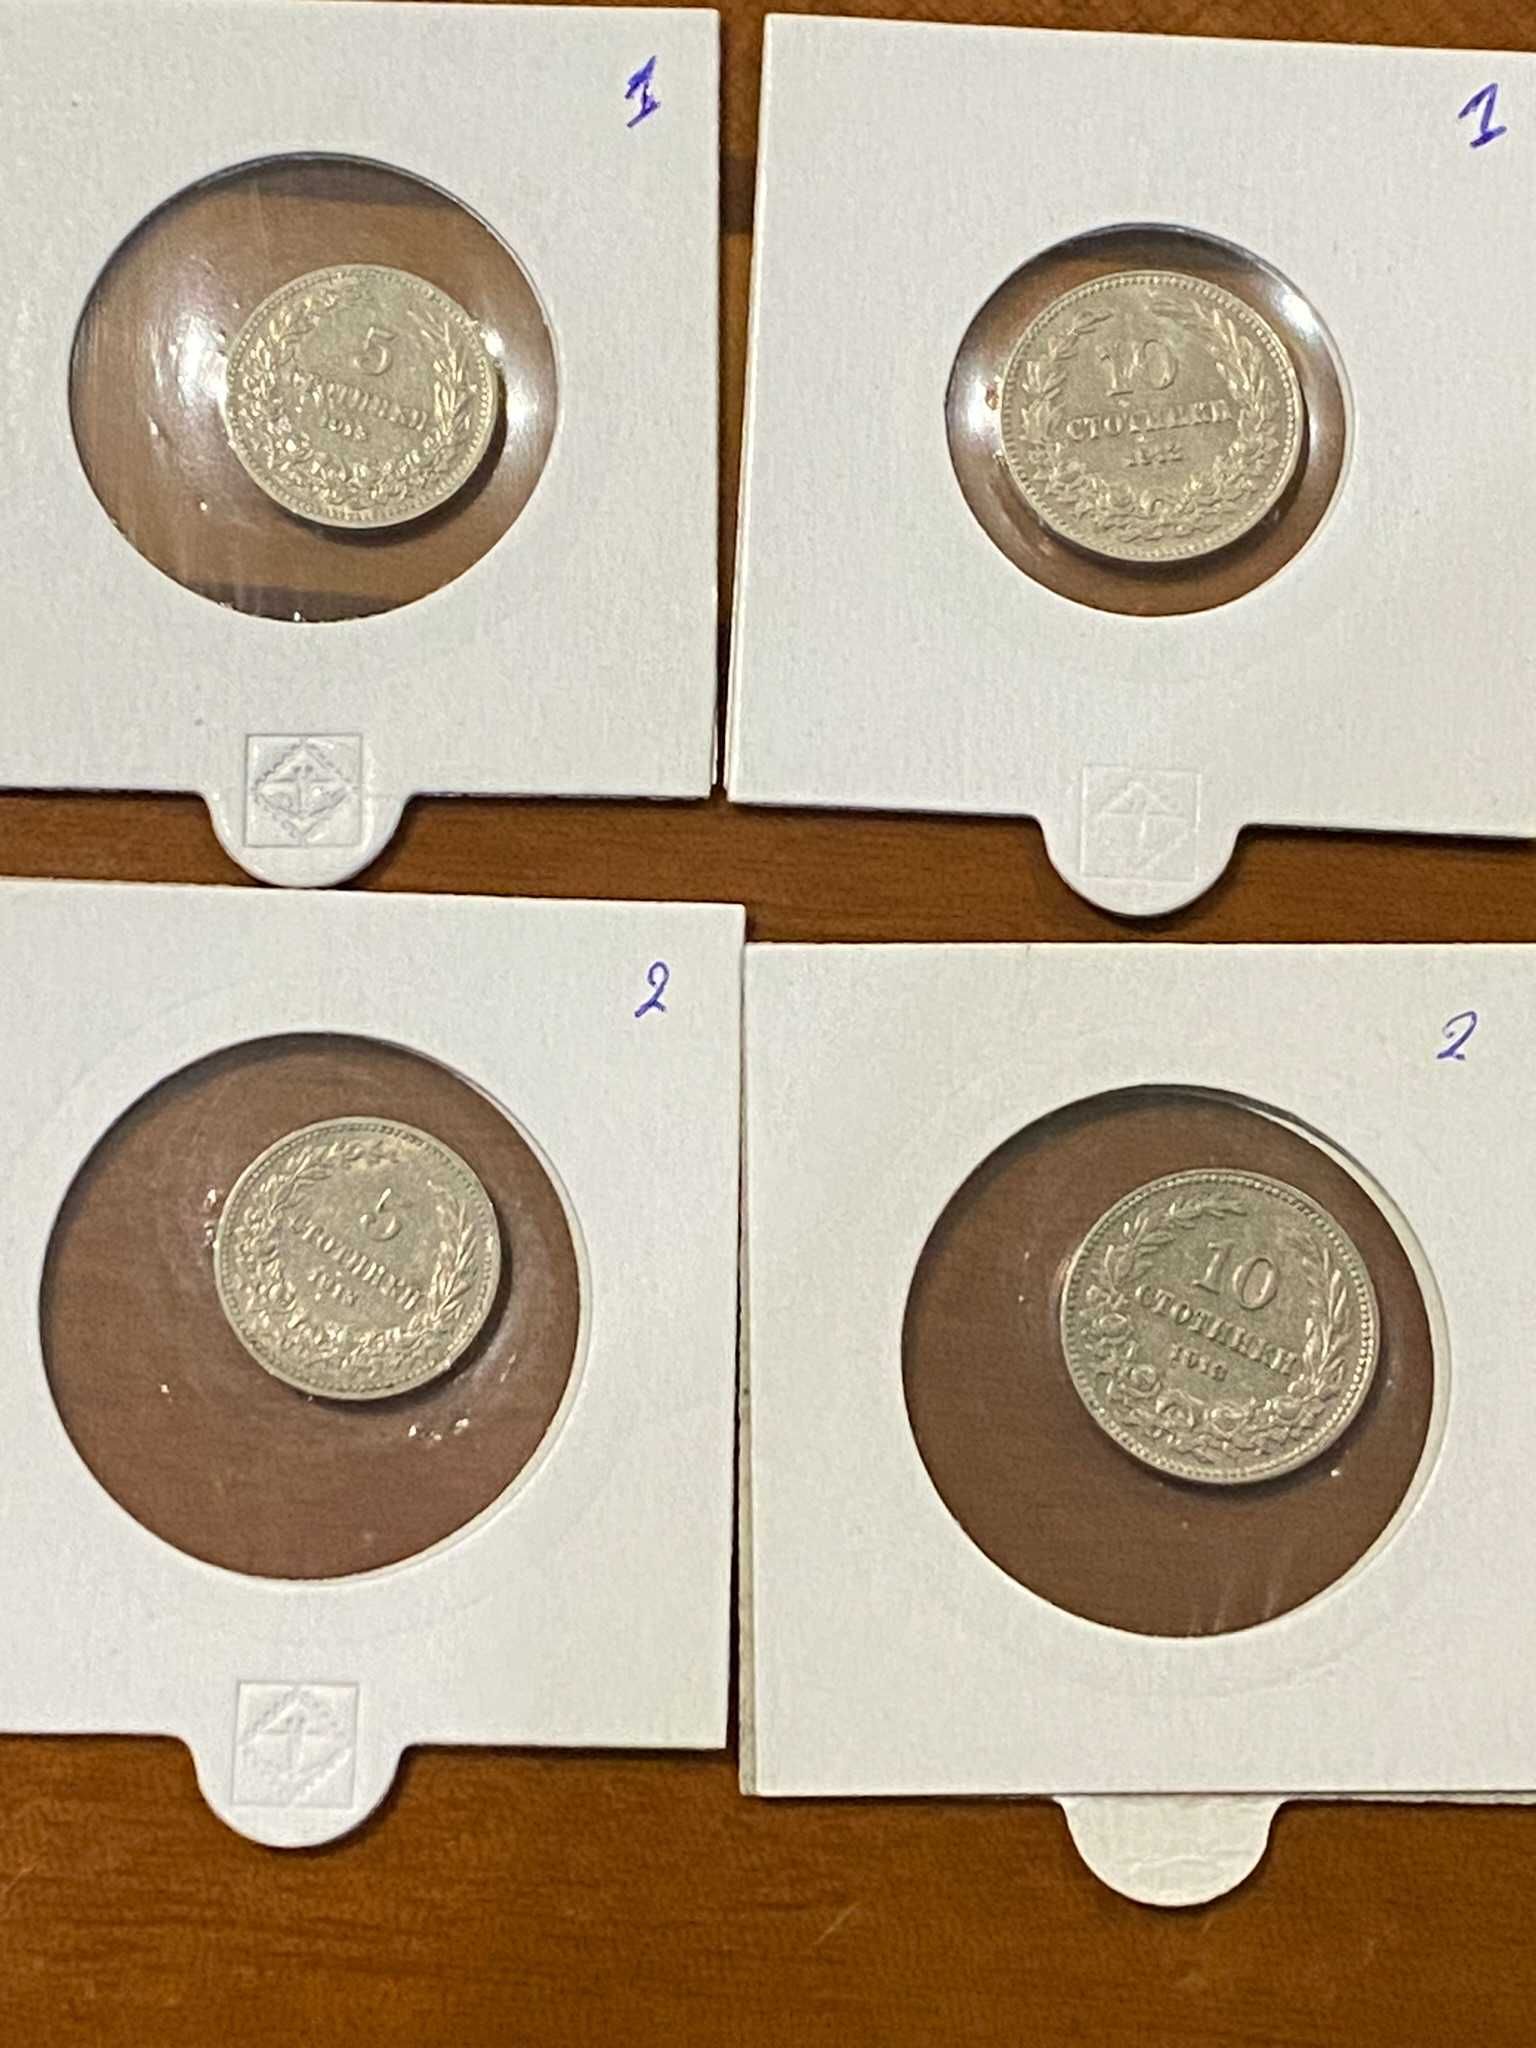 Български монети от 1913 г.и 1912г.